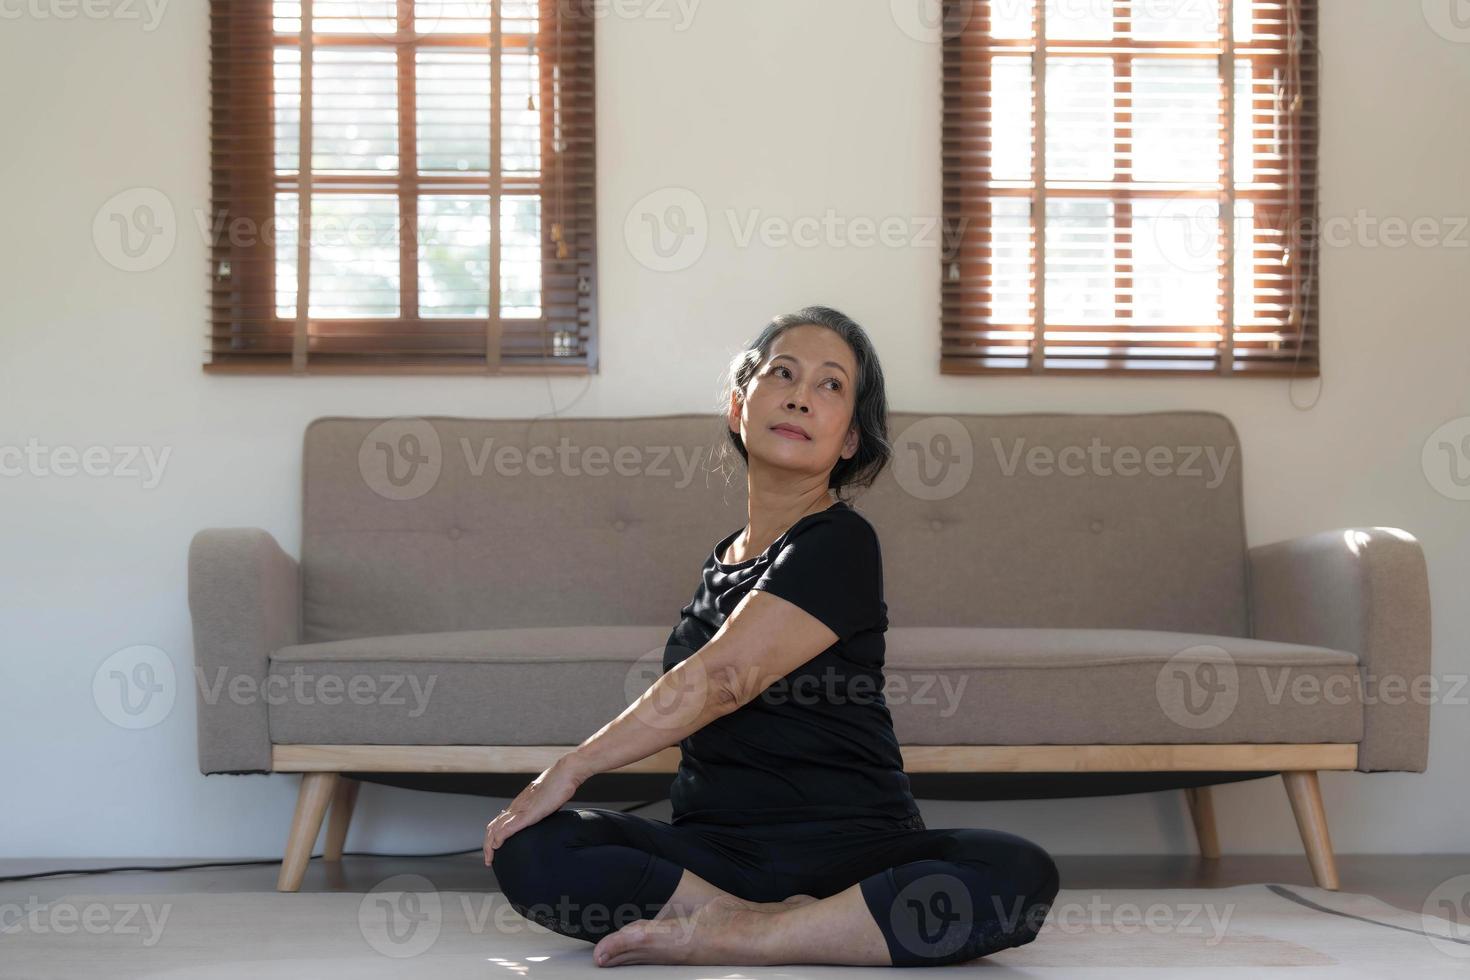 friska och Lycklig 60s pensionerad asiatisk kvinna i träna kläder praktiserande yoga i henne levande rum. foto